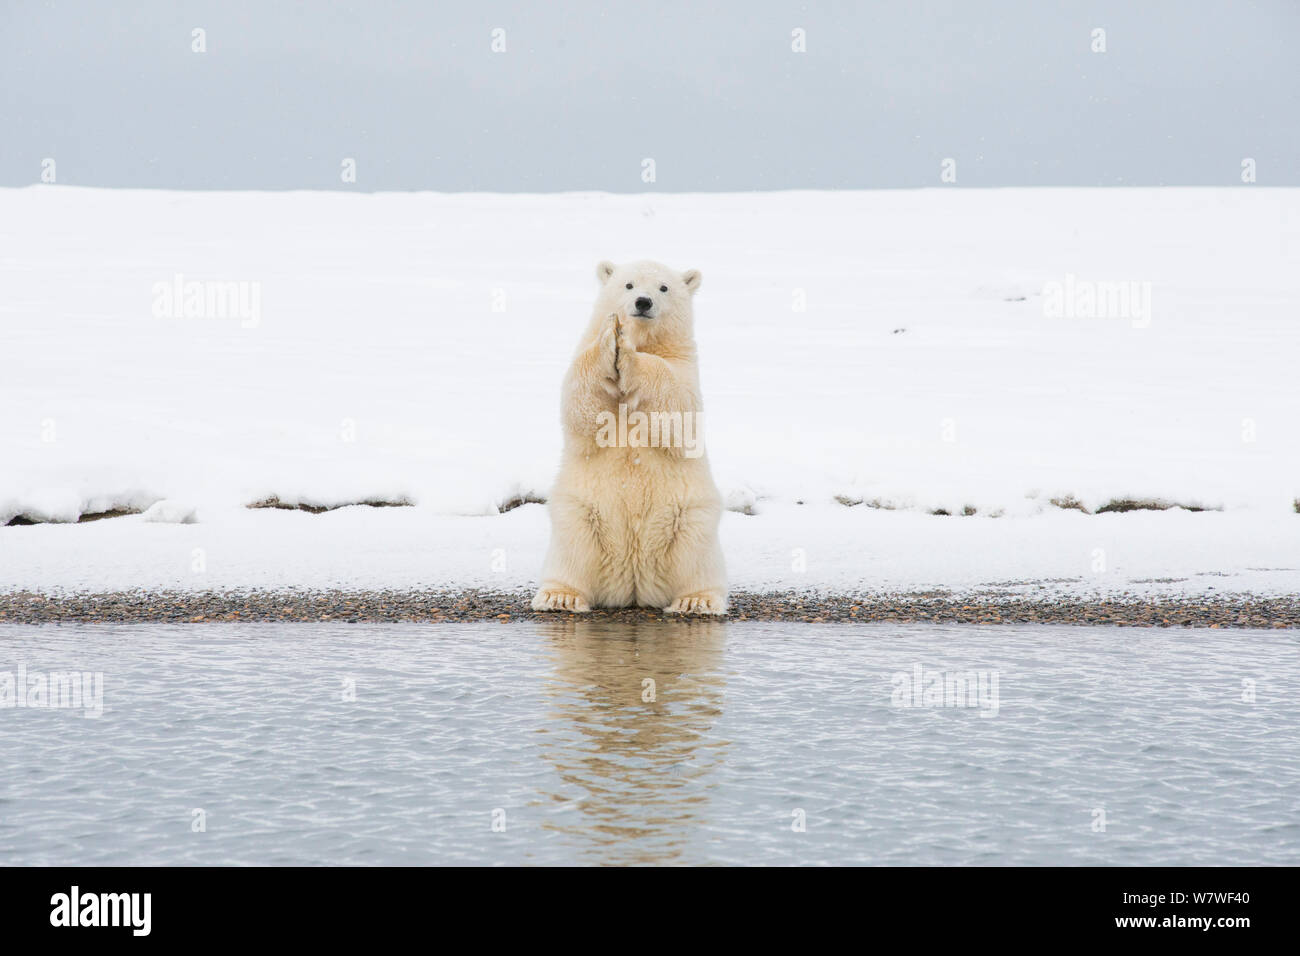 Eisbär (Ursus maritimus) spring Cub auf seine Hüftknochen und Kratzer selbst, auf einer vorgelagerten Insel im Herbst freeze, Bernard Spit, Nordhang, Alaska, September Stockfoto